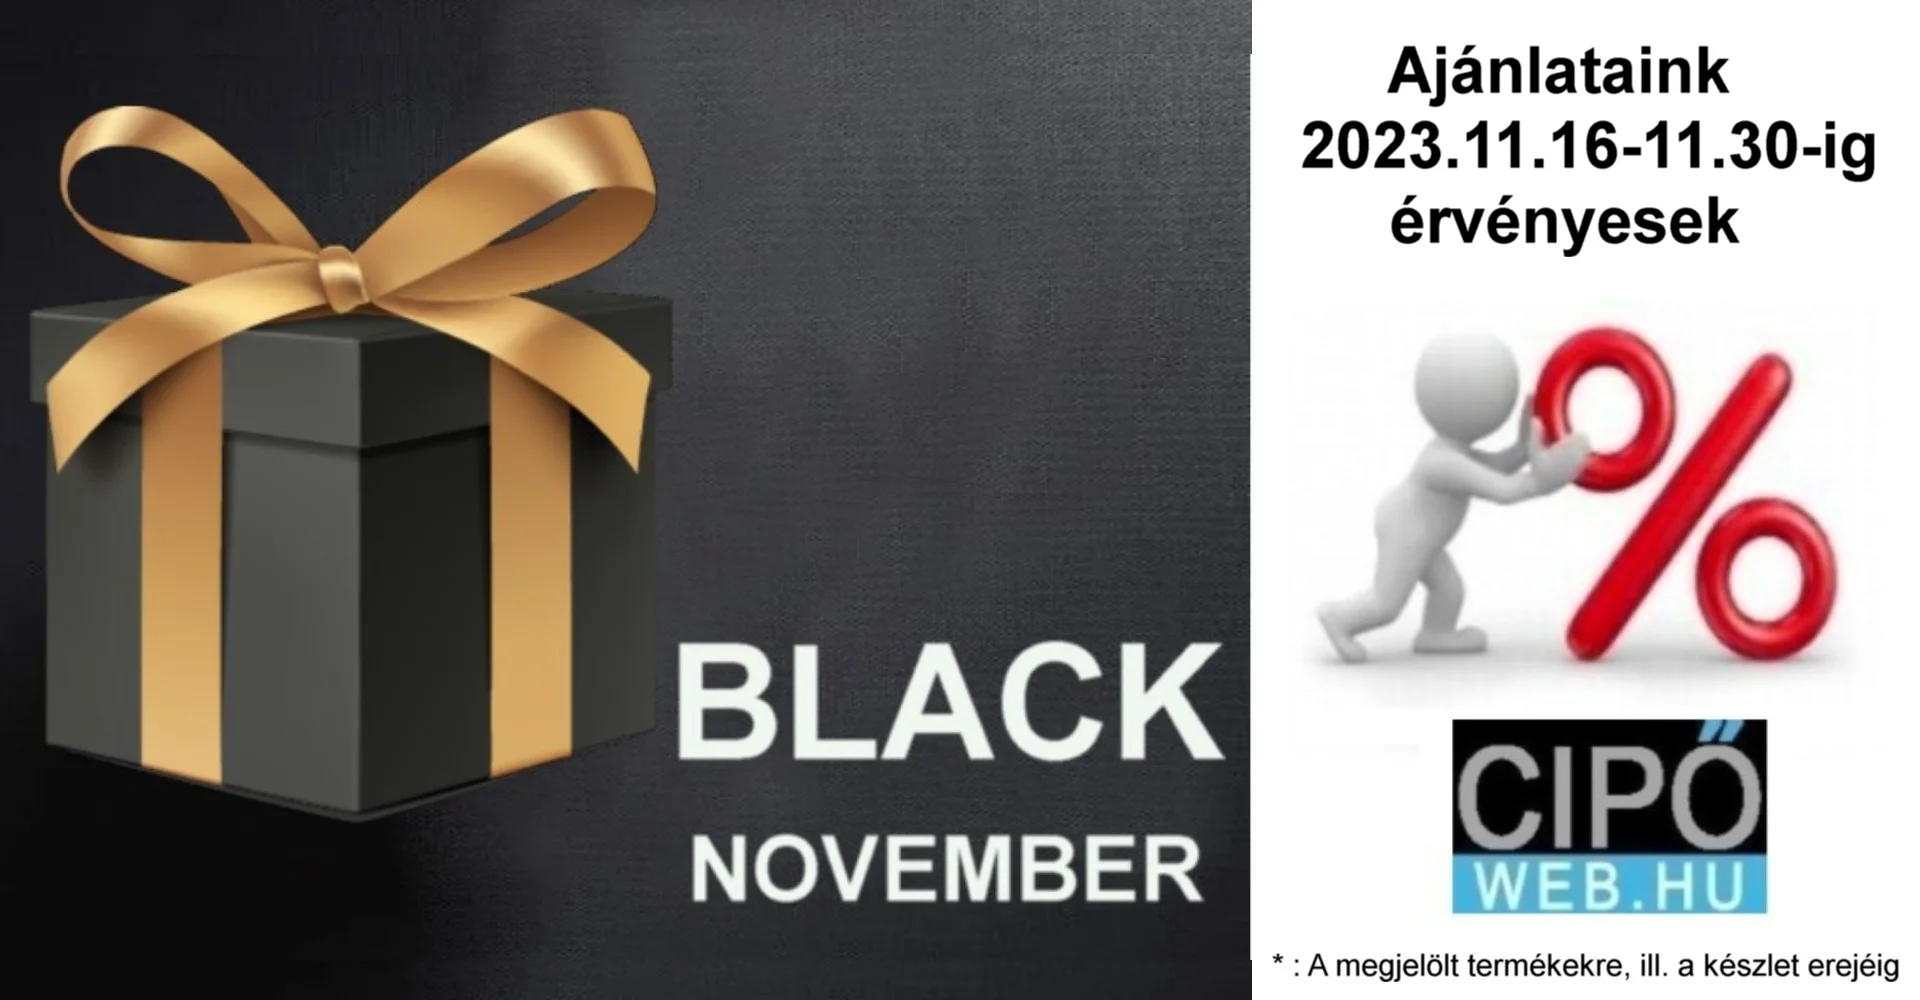 BLACK NOVEMBER - Megjelölt termékeink engedményes áron!